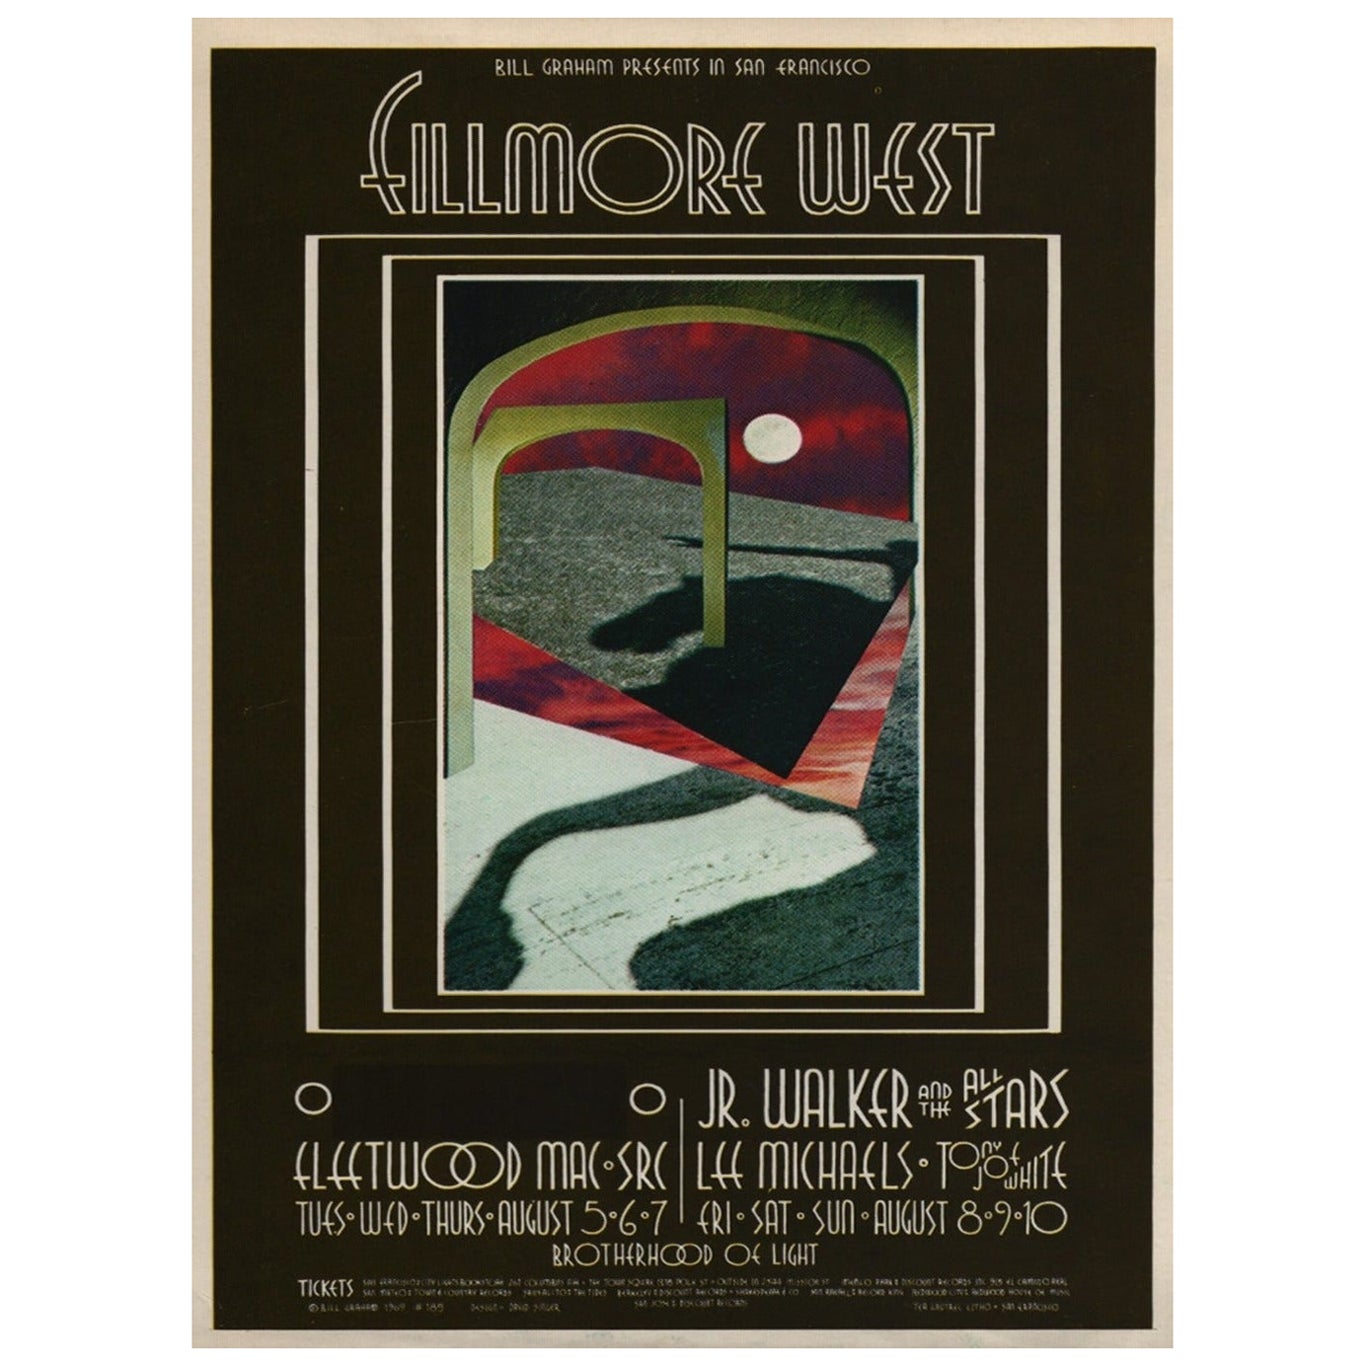 Original Vintage-Poster, Fleetwood Mac, Fillmore West, Fleetwood, 1969